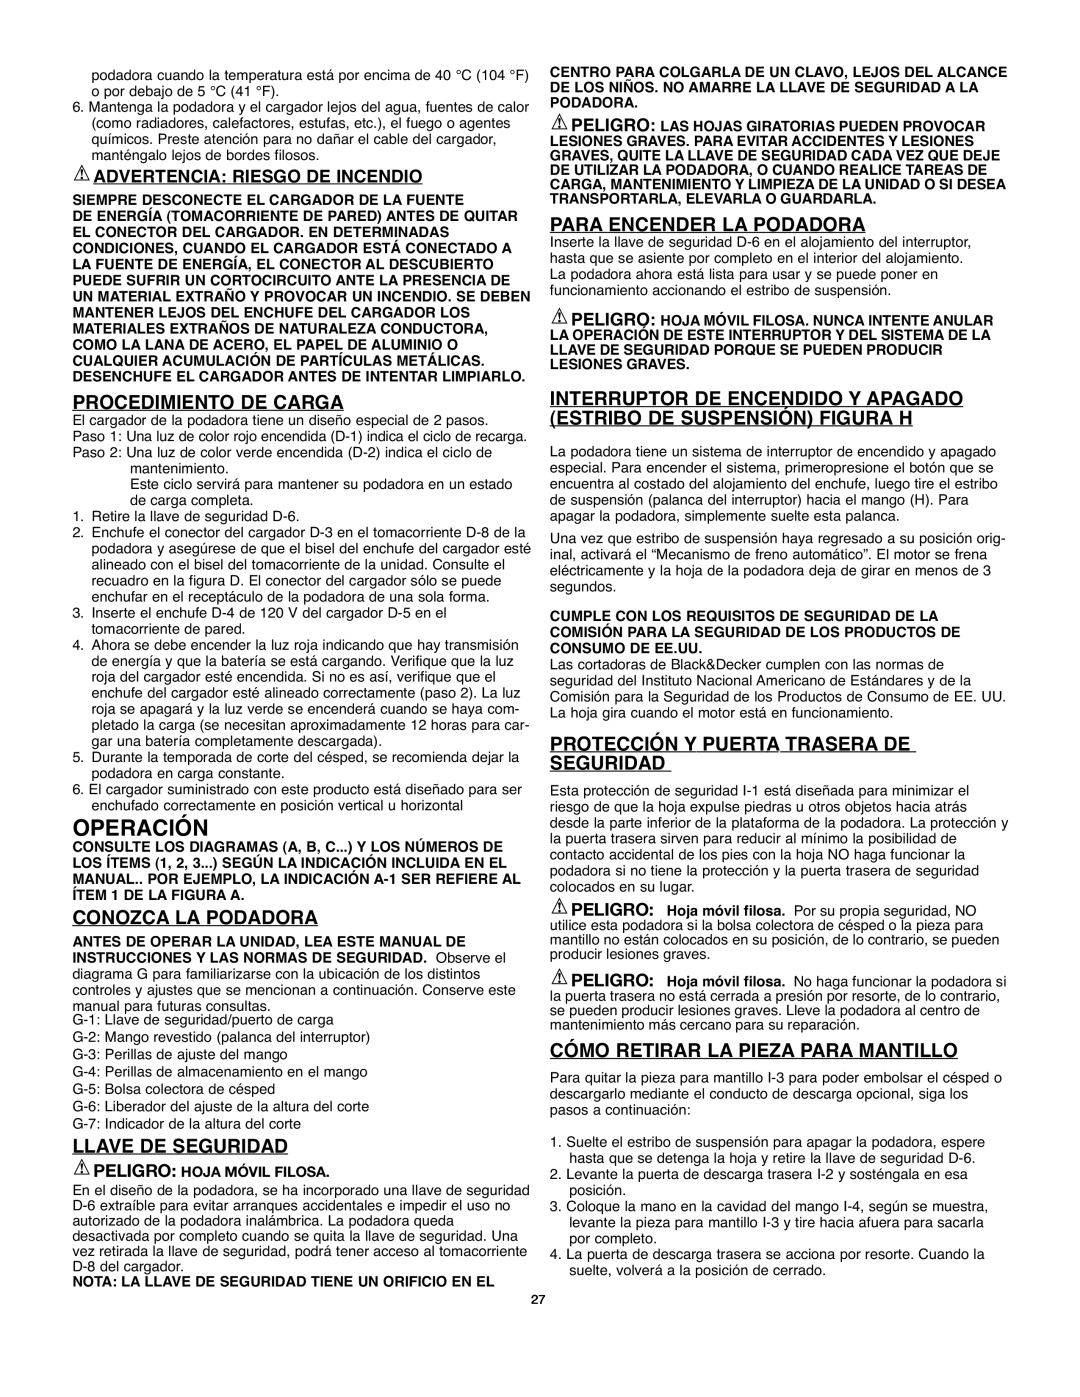 Black & Decker 90541667 instruction manual Operación, Procedimiento De Carga, Conozca La Podadora, Llave De Seguridad 